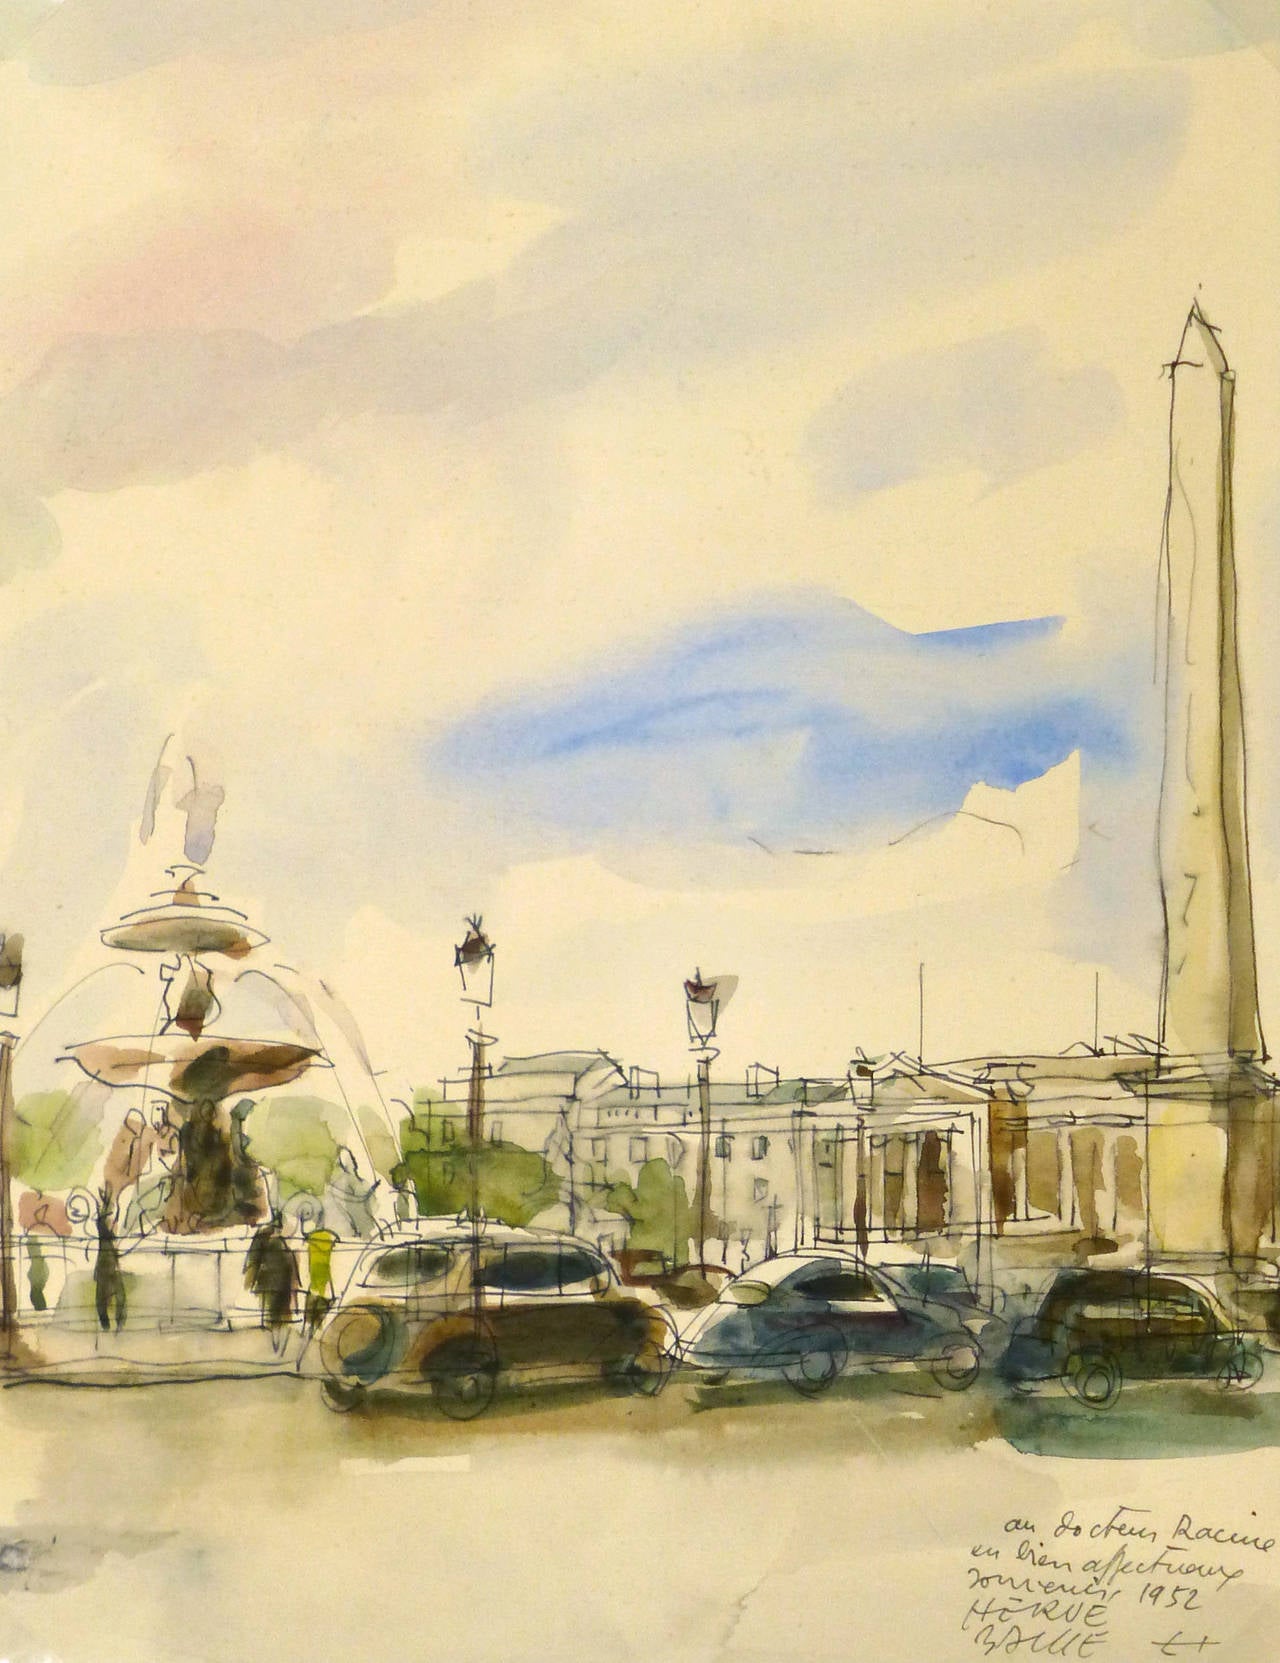 Herve Baille Landscape Art - Vintage French Ink and Watercolor Landscape - Place de la Concorde Paris